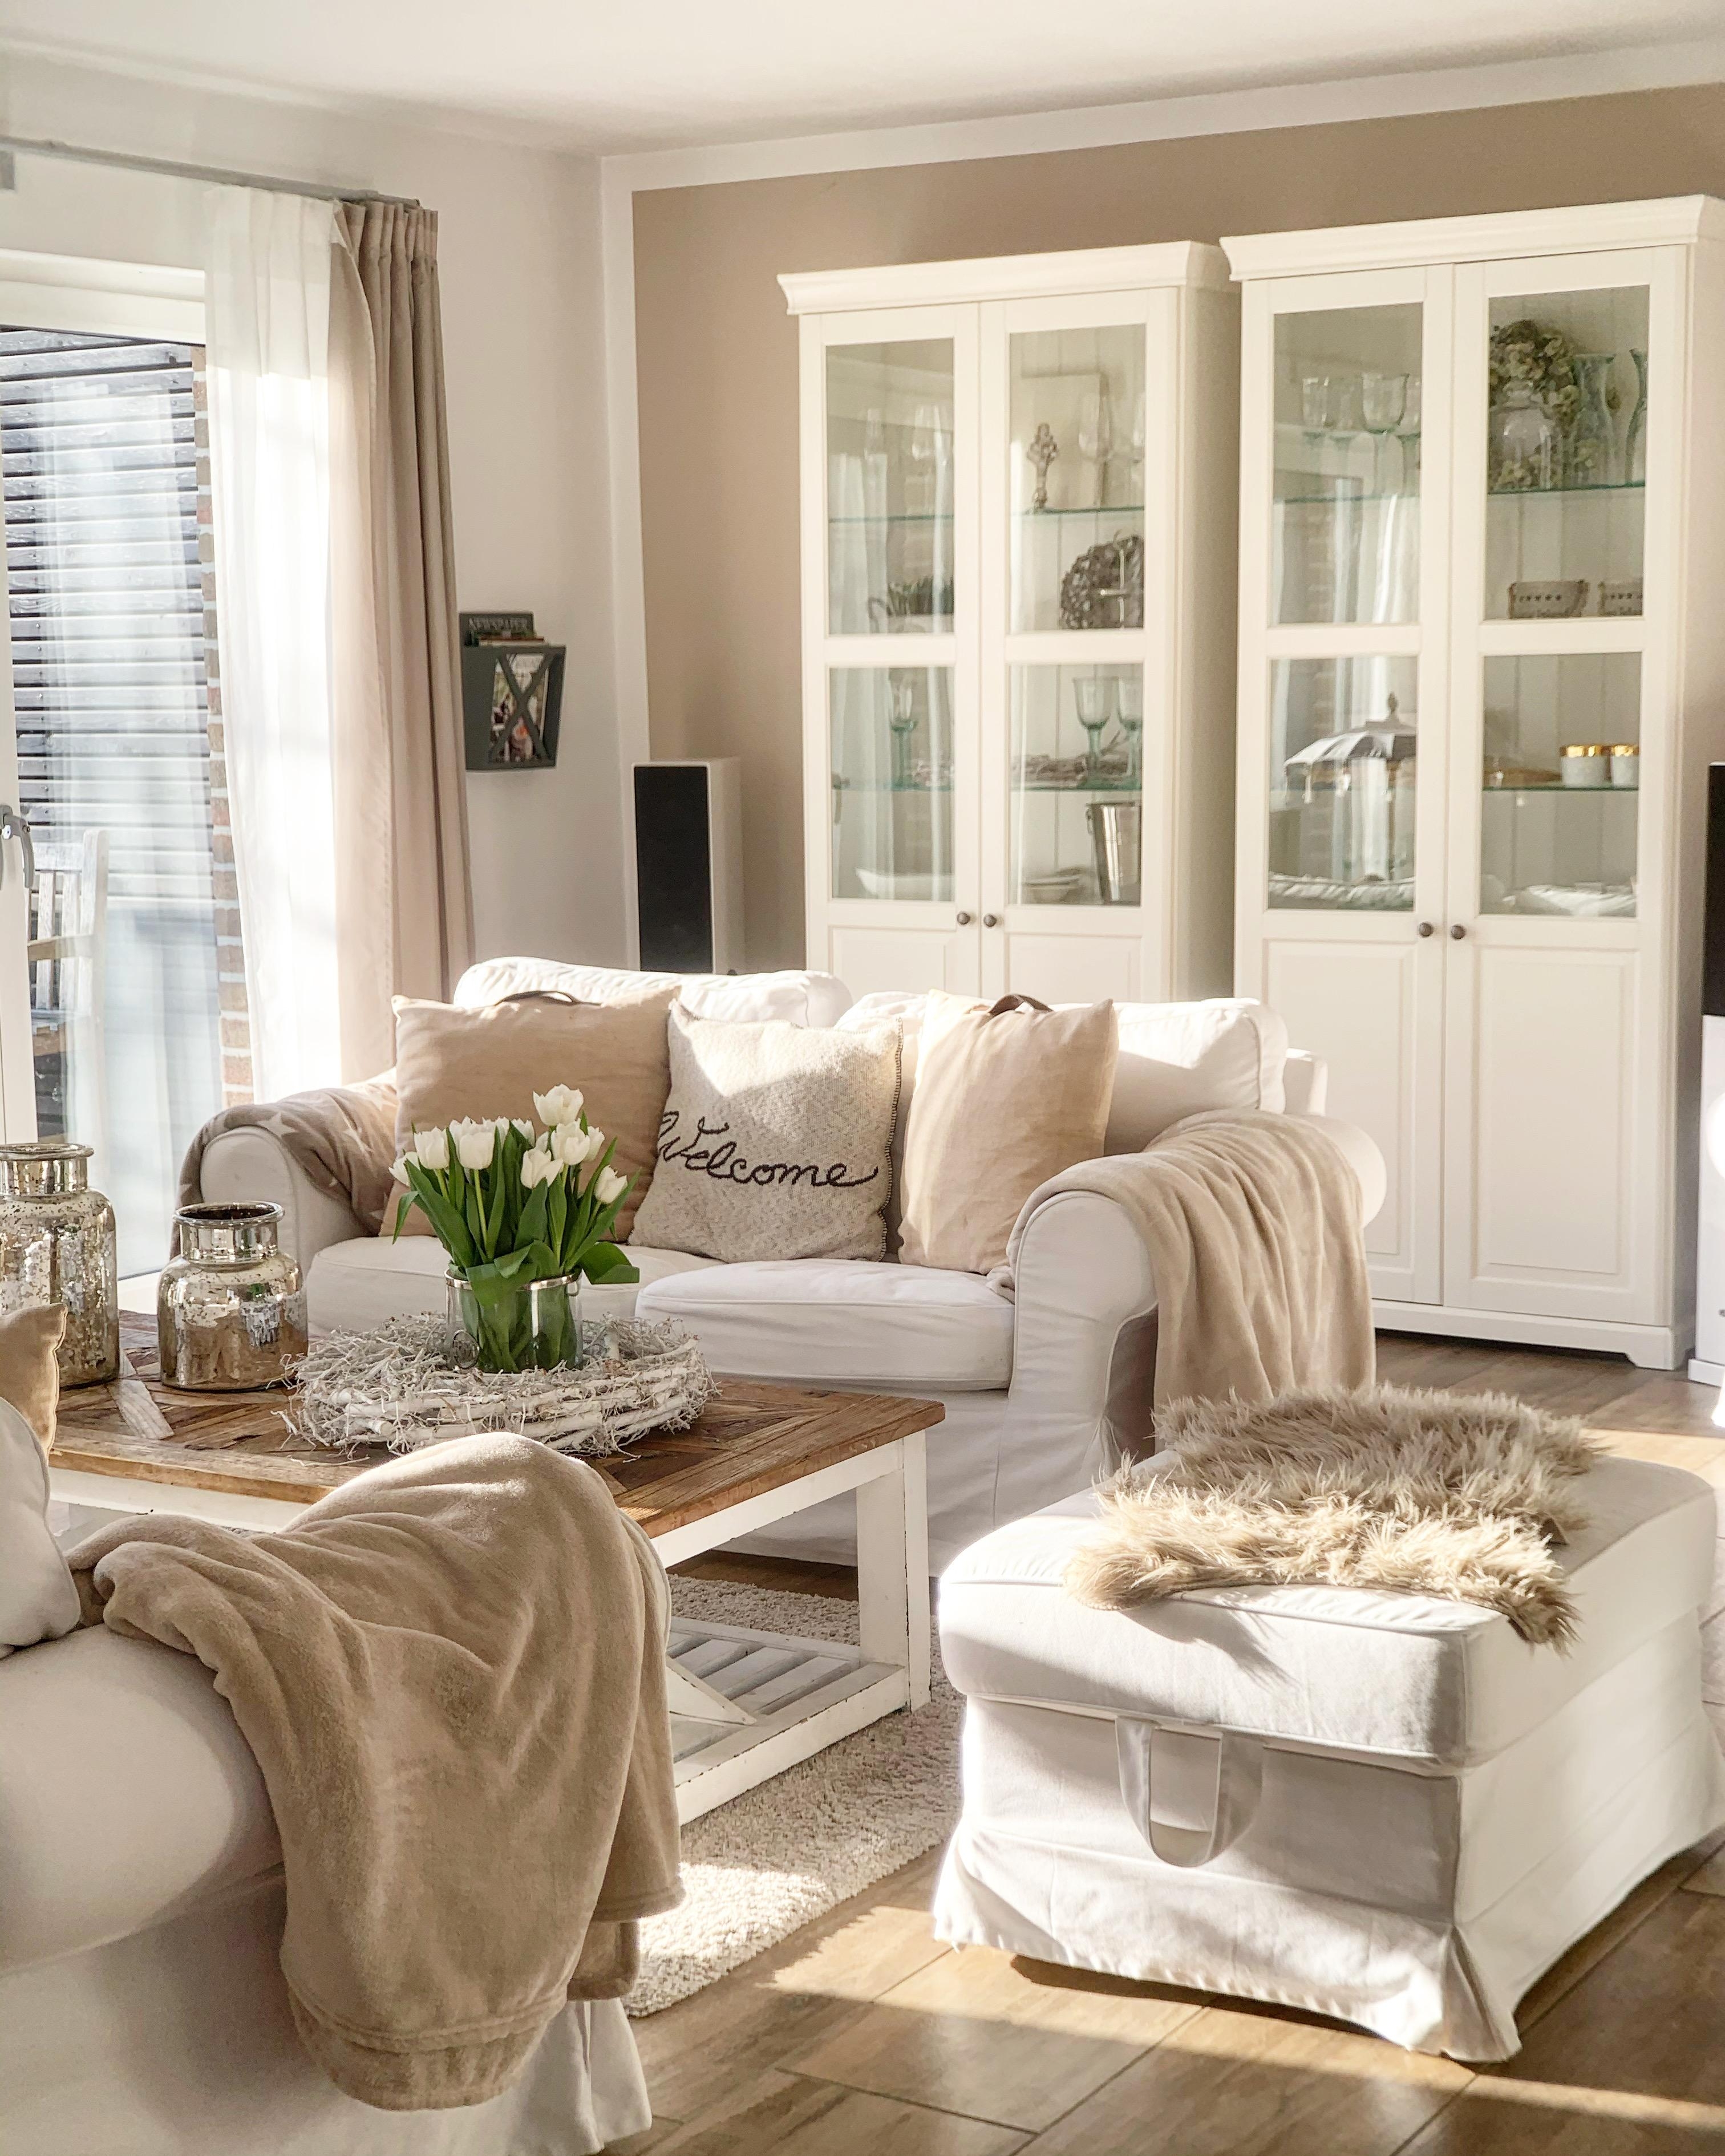 Unser Wohnzimmer!

#couch #couchtisch #wohnzimmer #interiorinspo #einrichten 
#landhausstil 